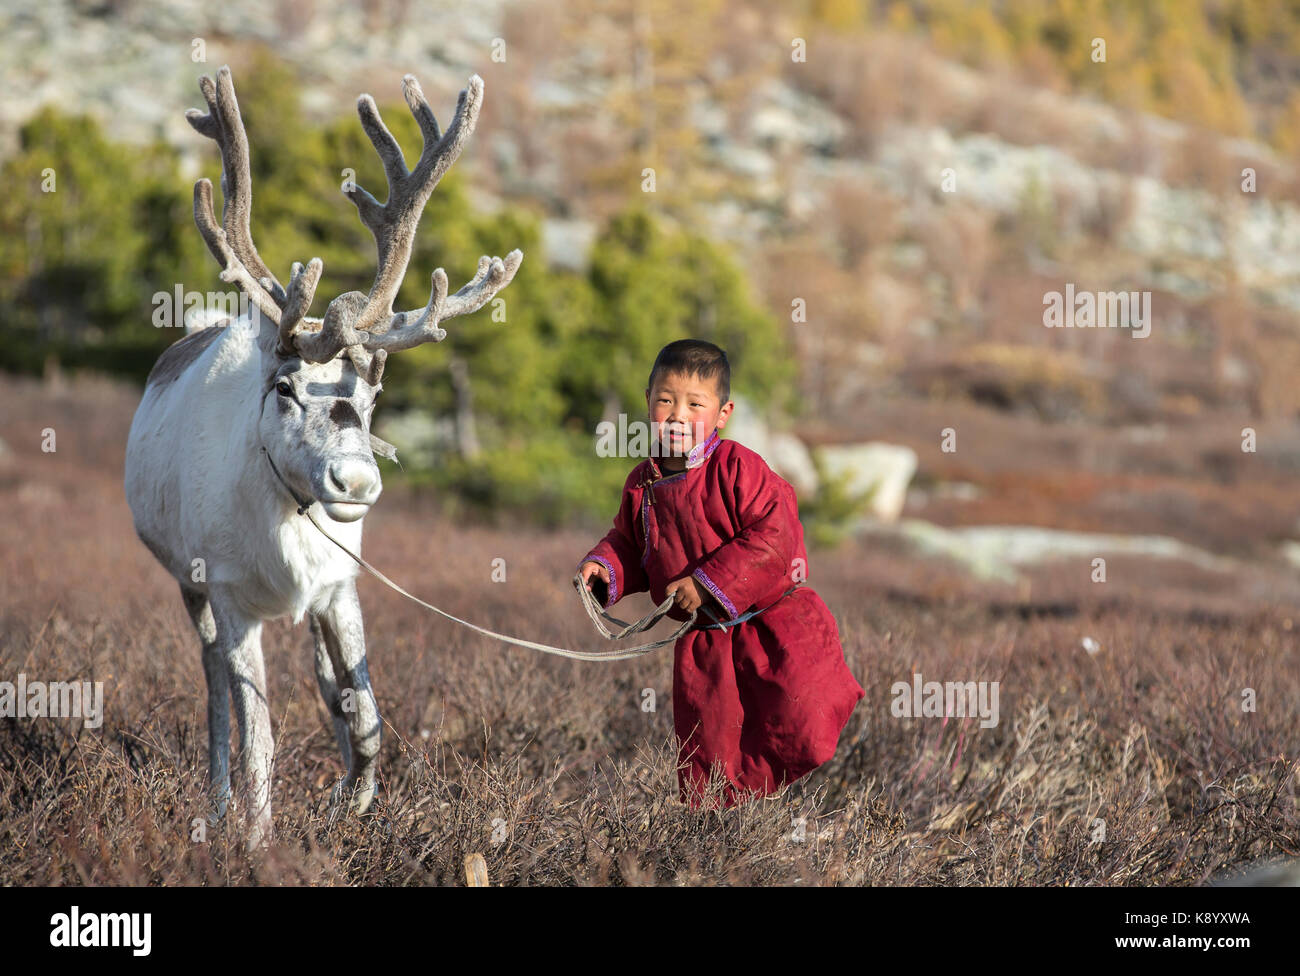 Garçon tsaatan, vêtu d'un deel traditionnel, avec un renne dans une taïga du nord de la Mongolie Banque D'Images